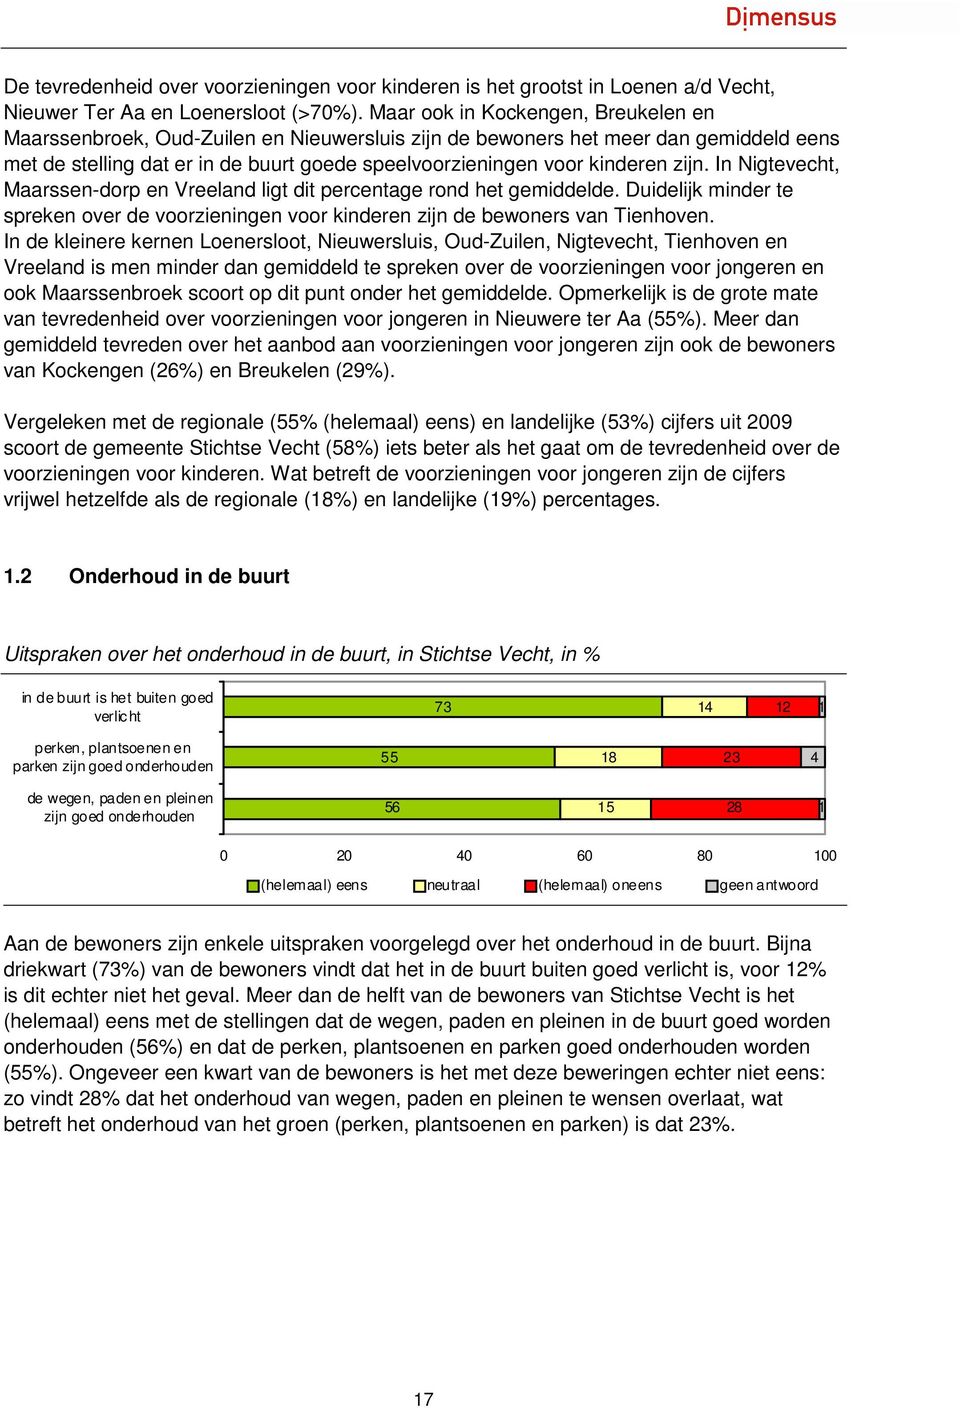 zijn. In Nigtevecht, Maarssen-dorp en Vreeland ligt dit percentage rond het gemiddelde. Duidelijk minder te spreken over de voorzieningen voor kinderen zijn de bewoners van Tienhoven.